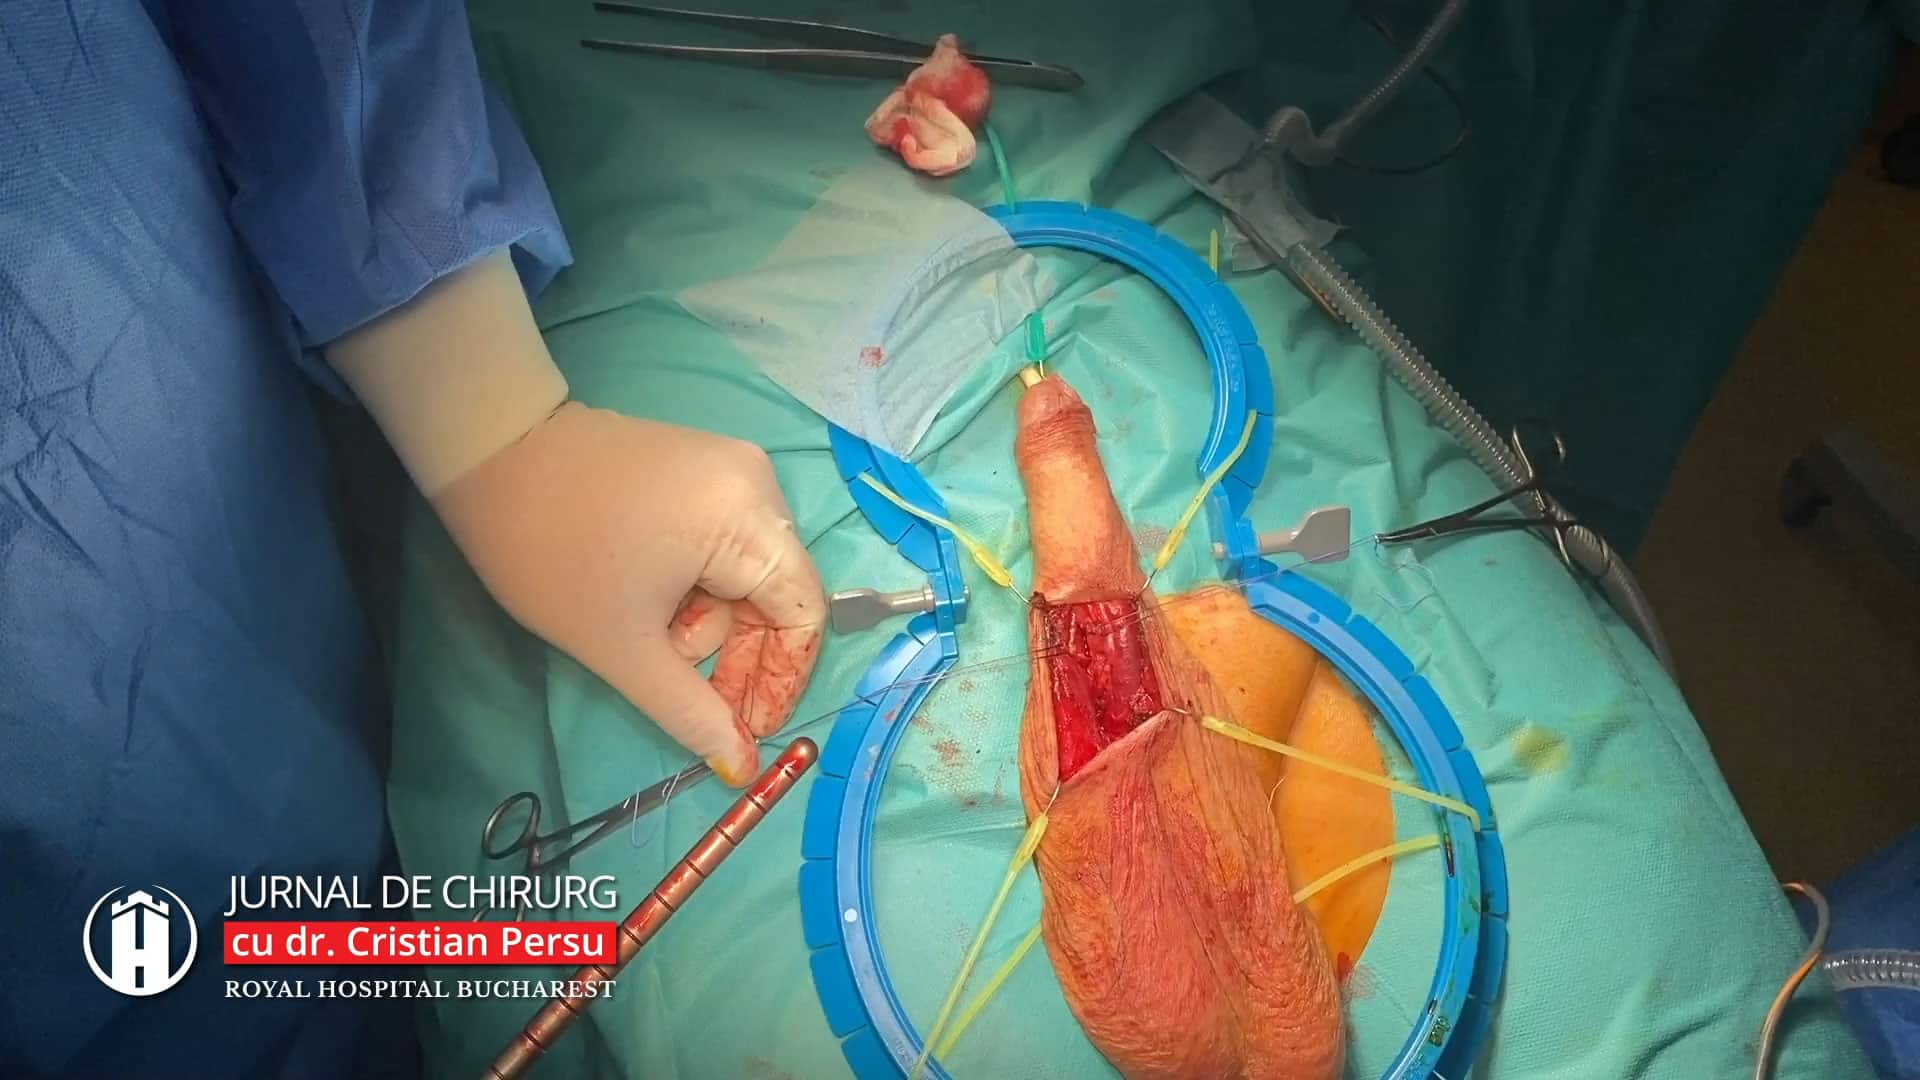 implant de erecție curbura congenitală a penisului